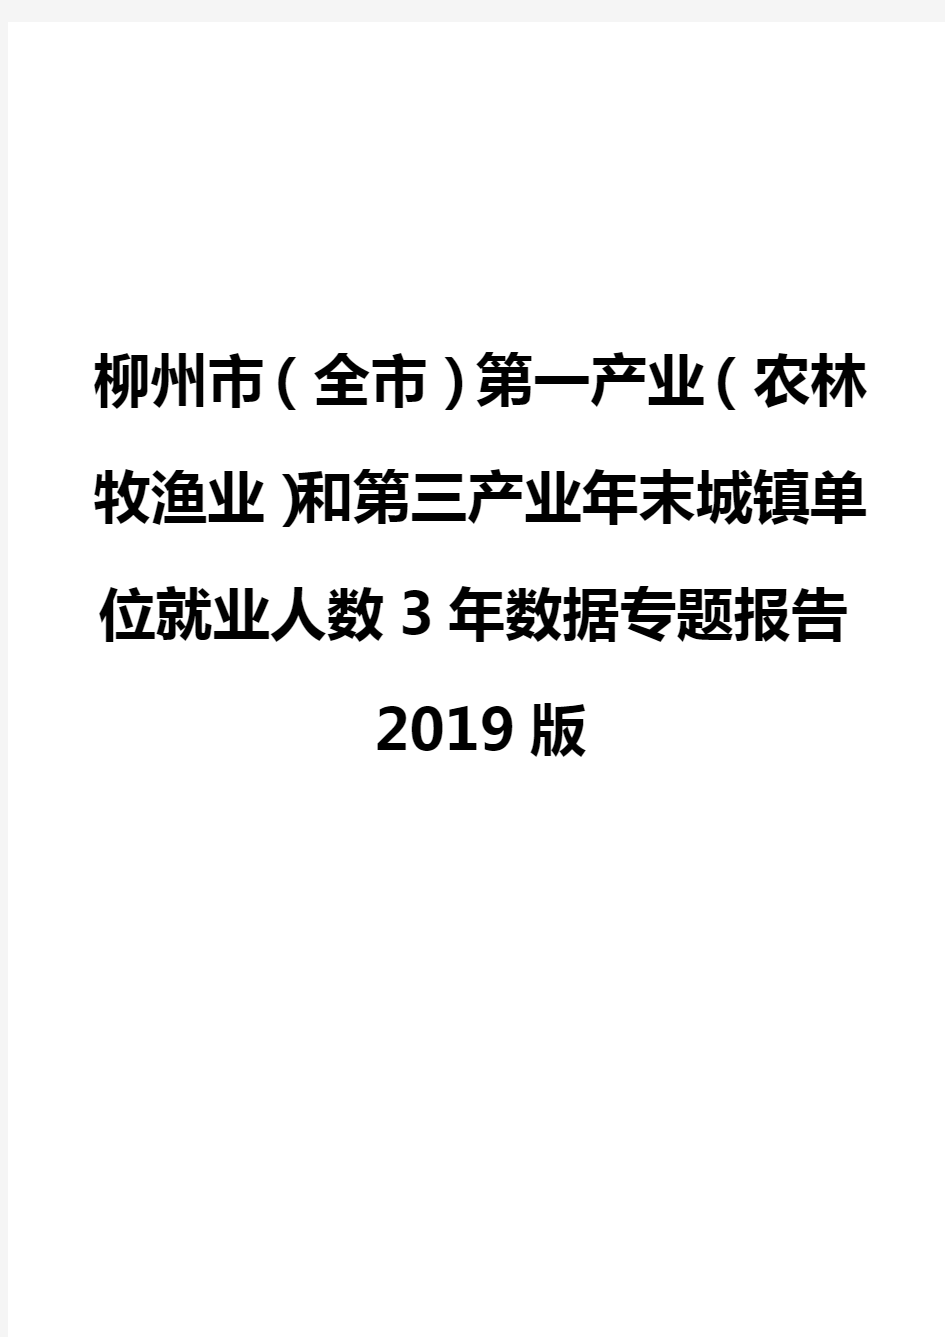 柳州市(全市)第一产业(农林牧渔业)和第三产业年末城镇单位就业人数3年数据专题报告2019版